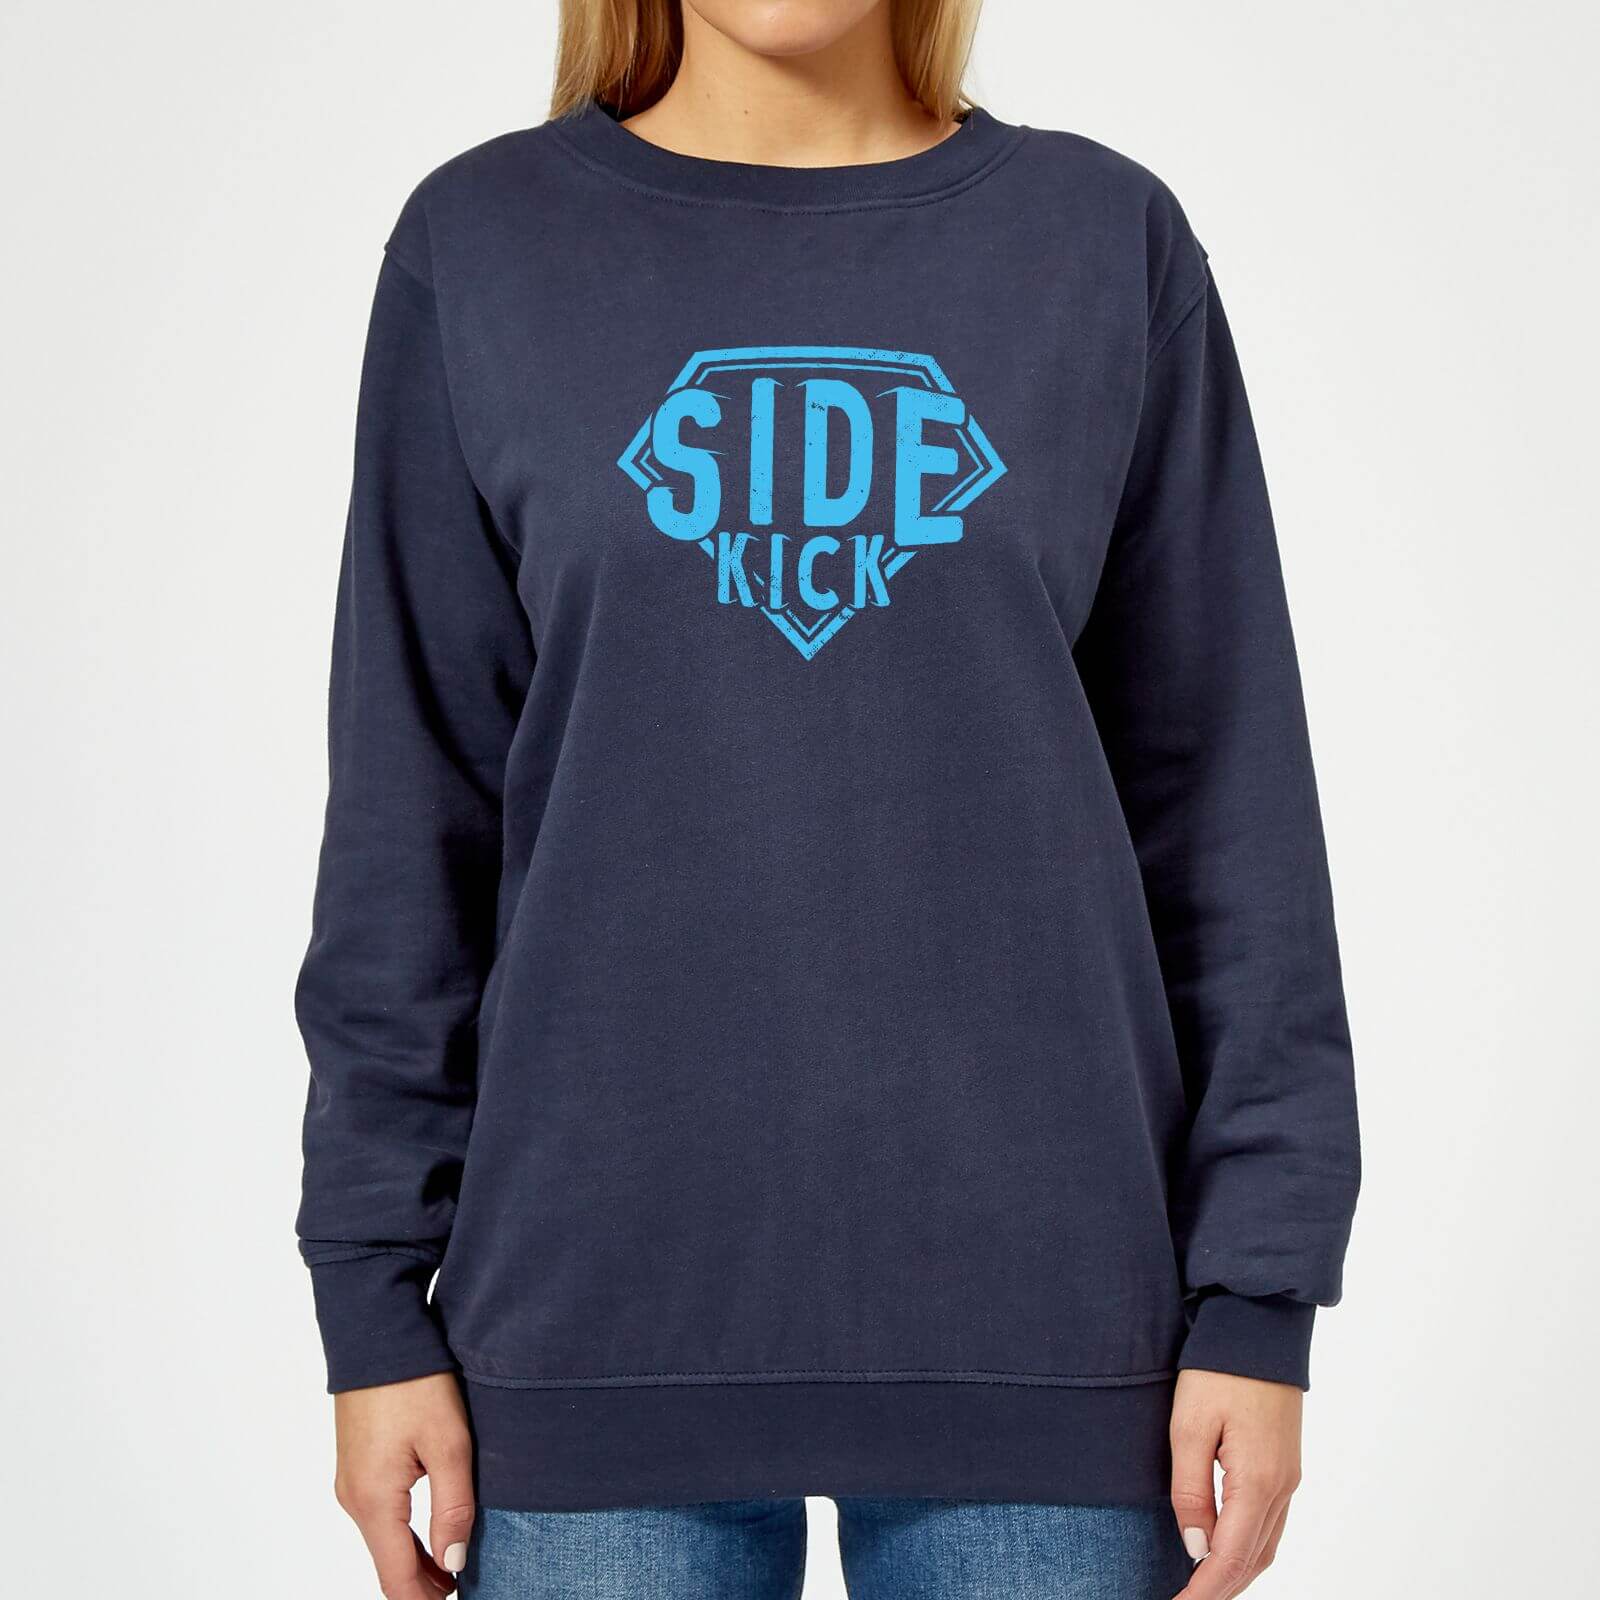 Sidekick Women's Sweatshirt - Navy - XS - Navy